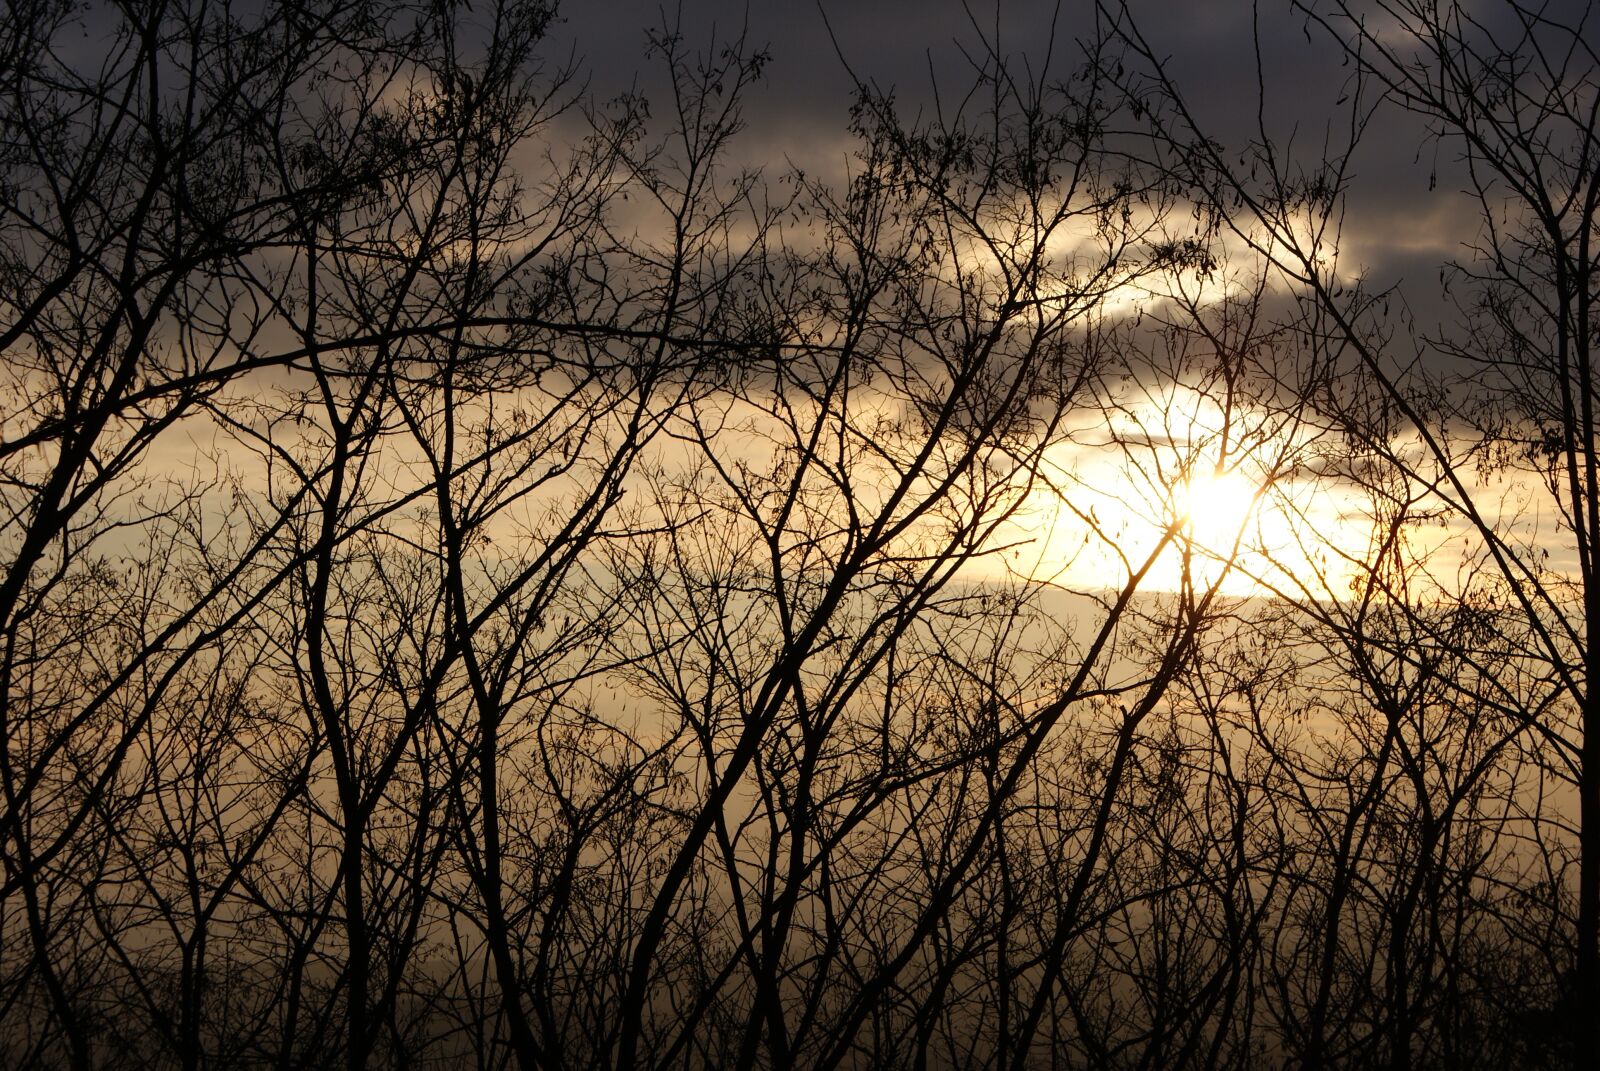 Sony Alpha DSLR-A200 sample photo. Sunset, twilight, landscapes photography